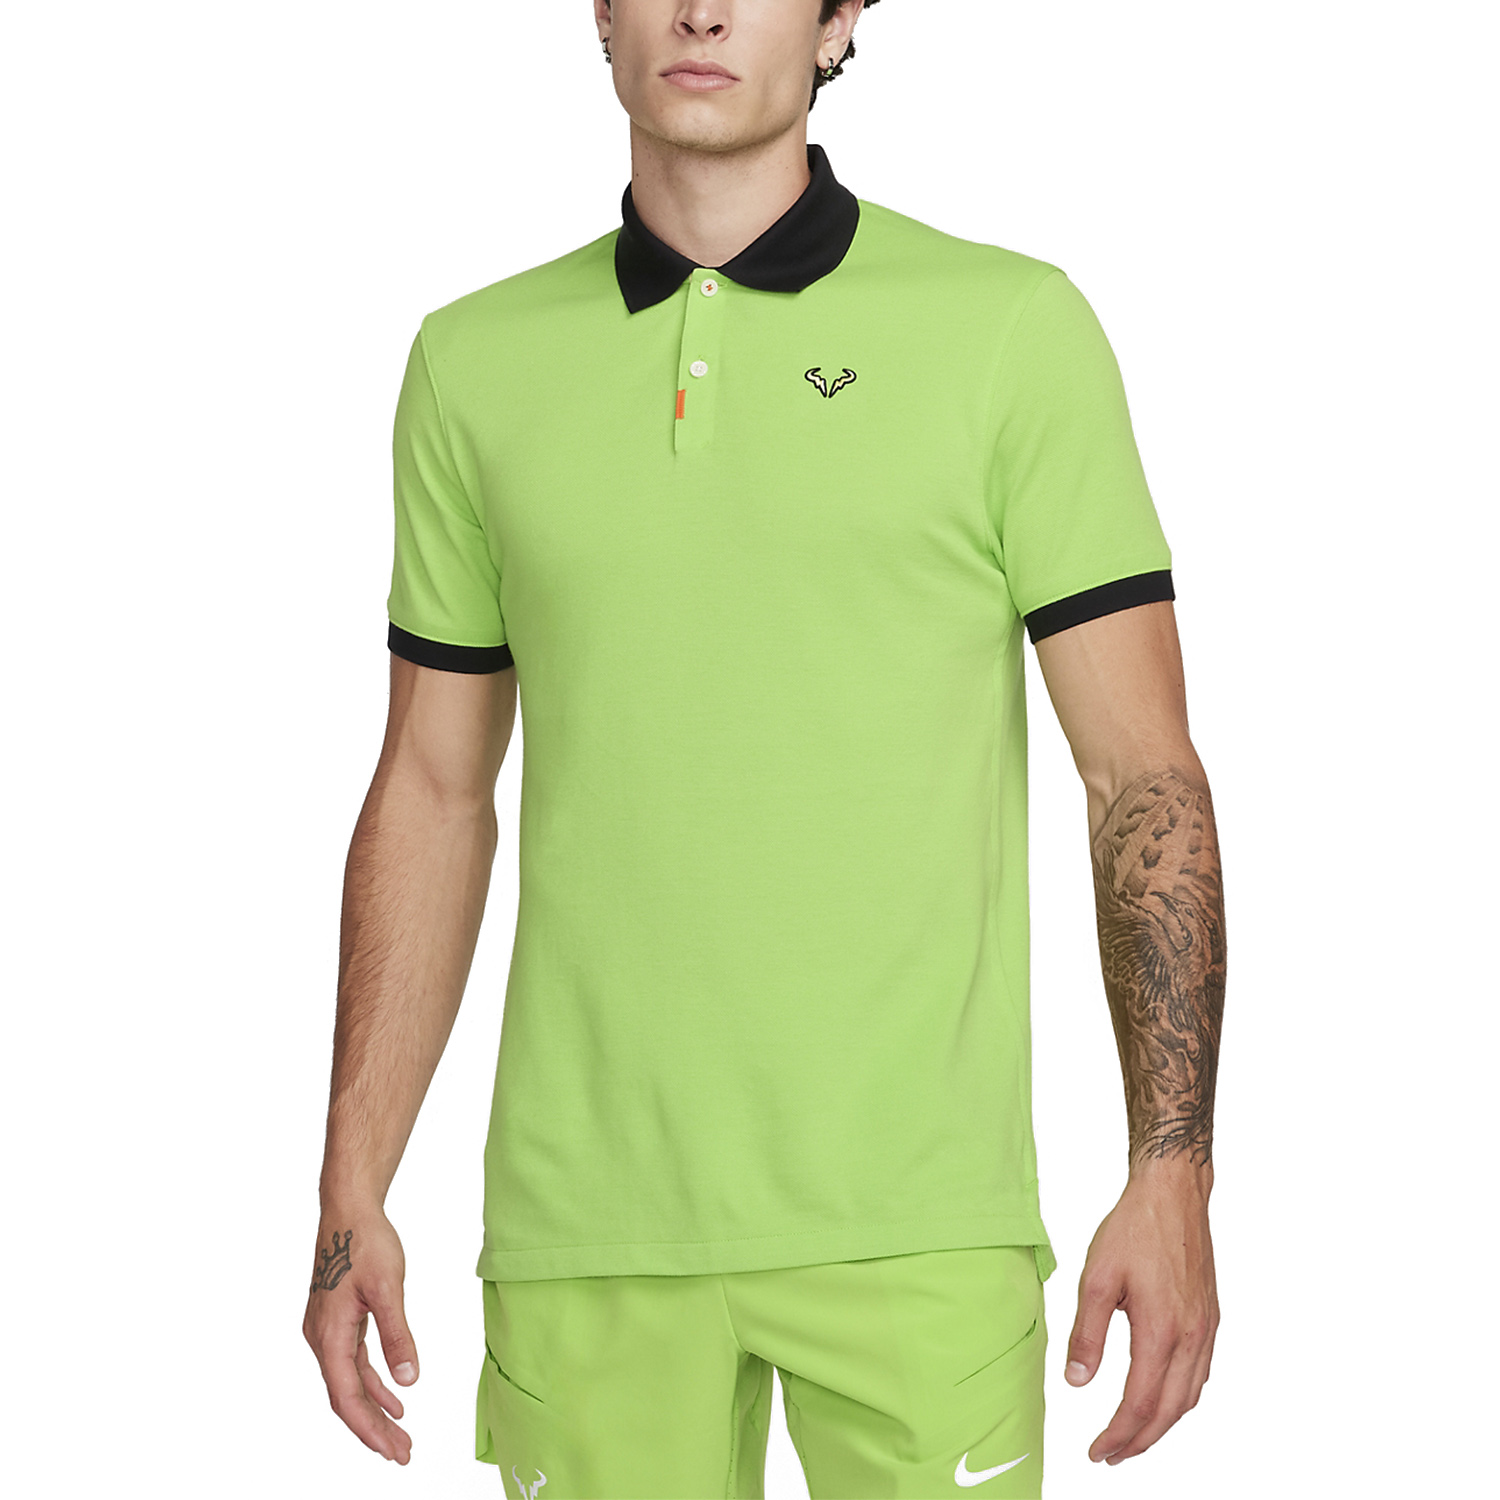 Nike Rafa Logo Men's Tennis Polo - Black/White